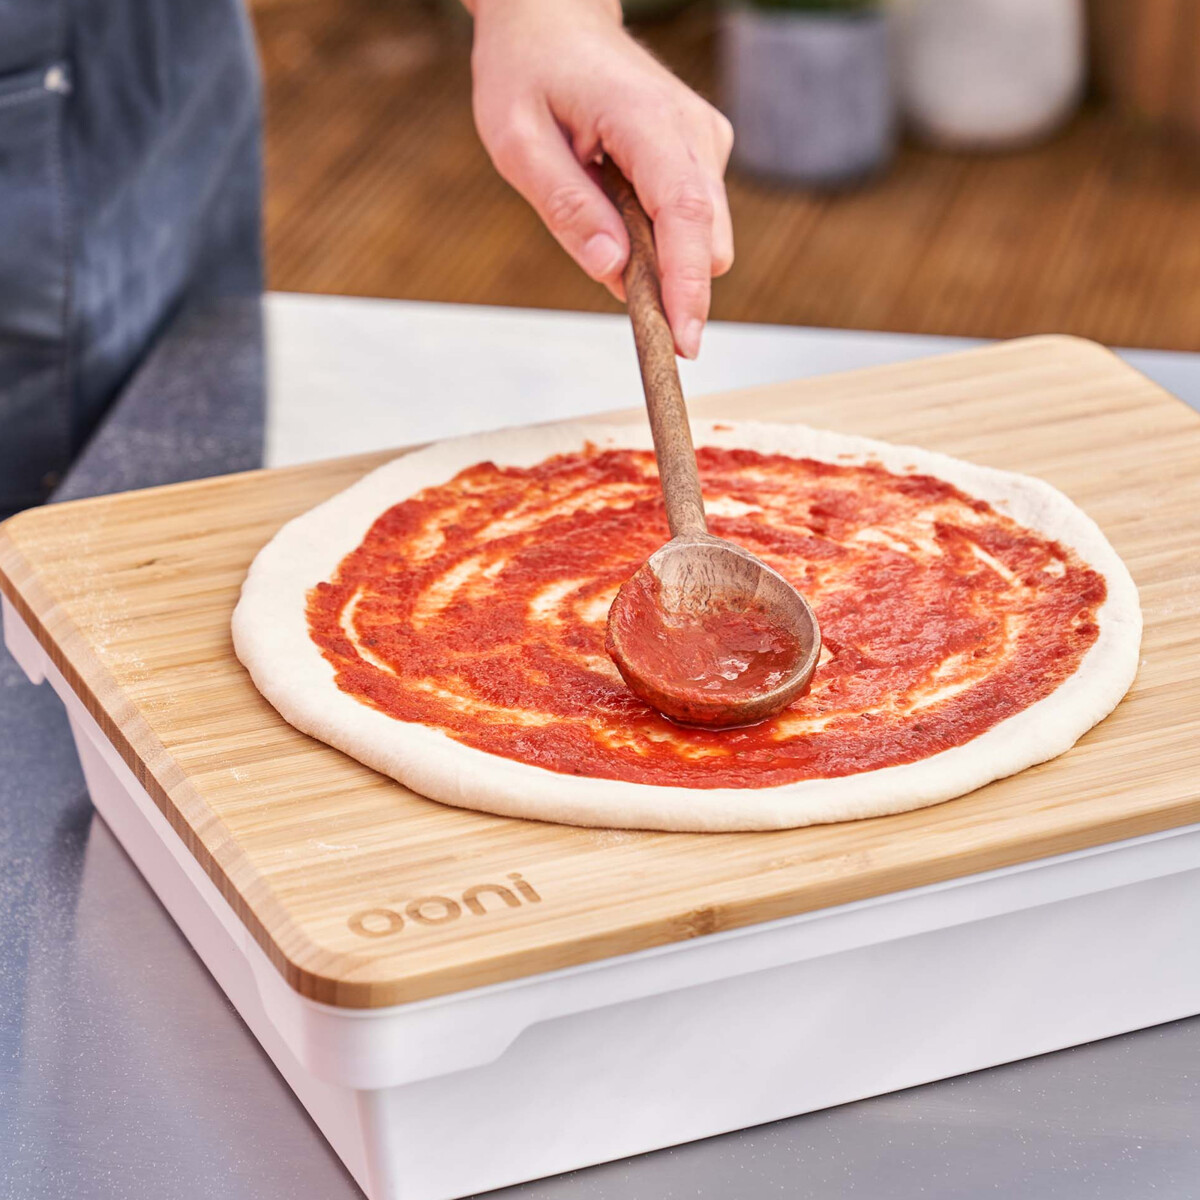 Contenitore lievitazione  Cassetta lievitazione impasto pizza — Ooni IT